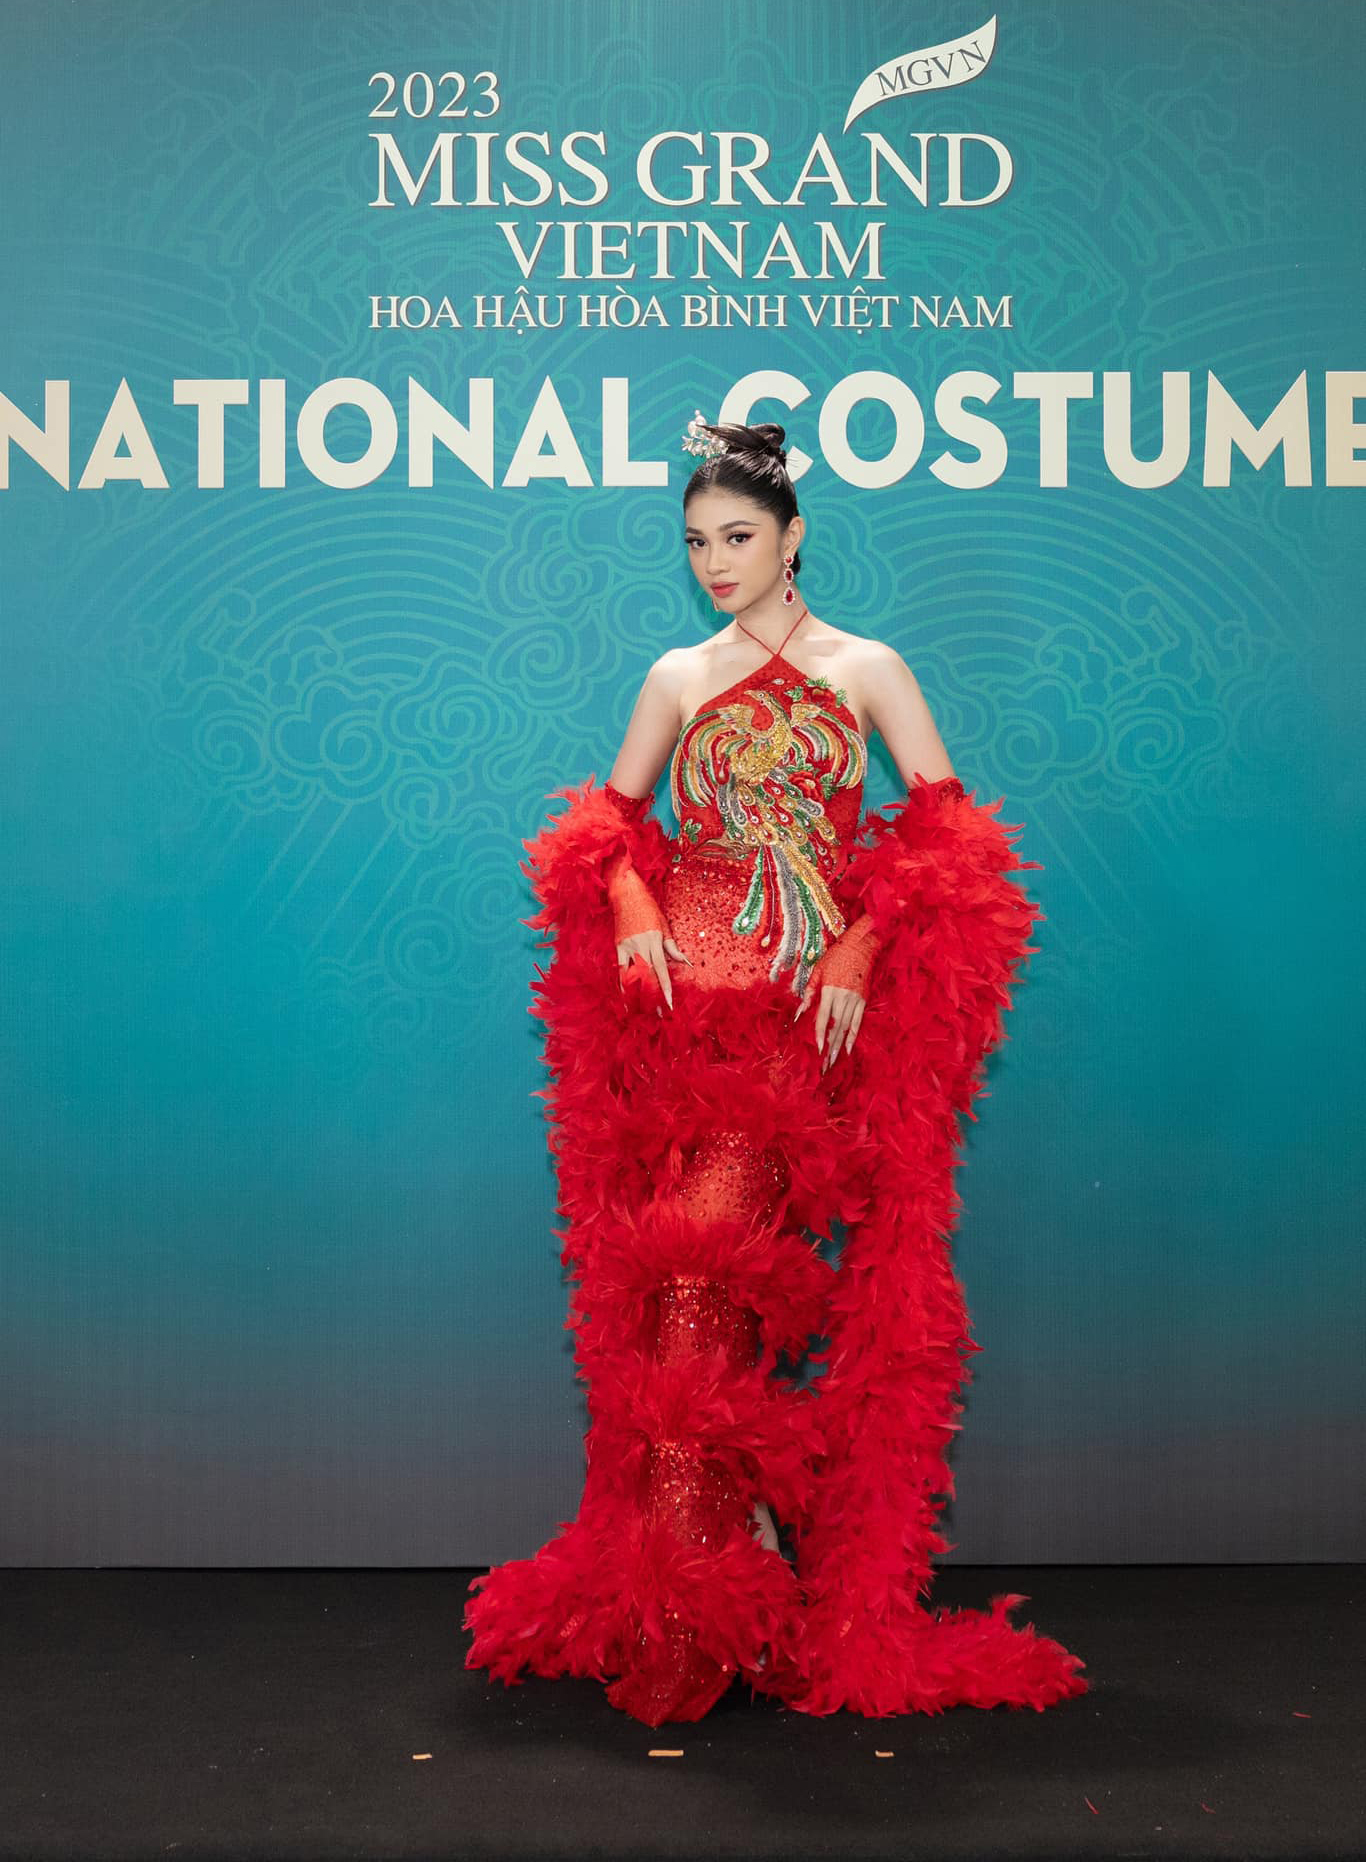 Á hậu Huỳnh Minh Kiên bật khóc nức nở trên sân khấu sau 1 tháng kể từ Miss World Vietnam, chuyện gì đã xảy ra? - ảnh 4